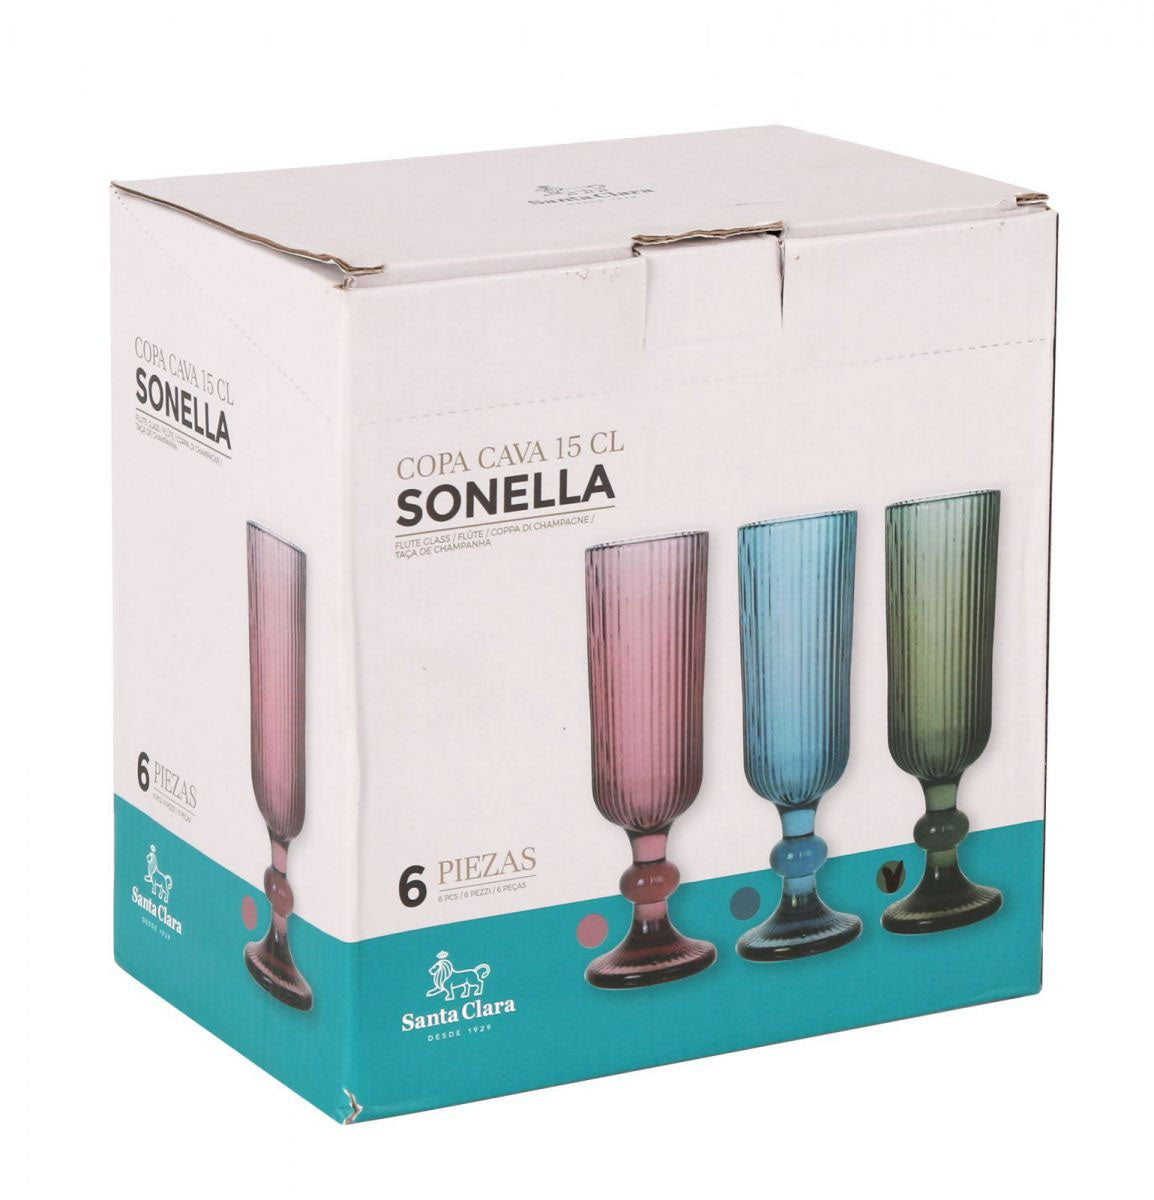 Sonella Green Champagne flutes 150ml